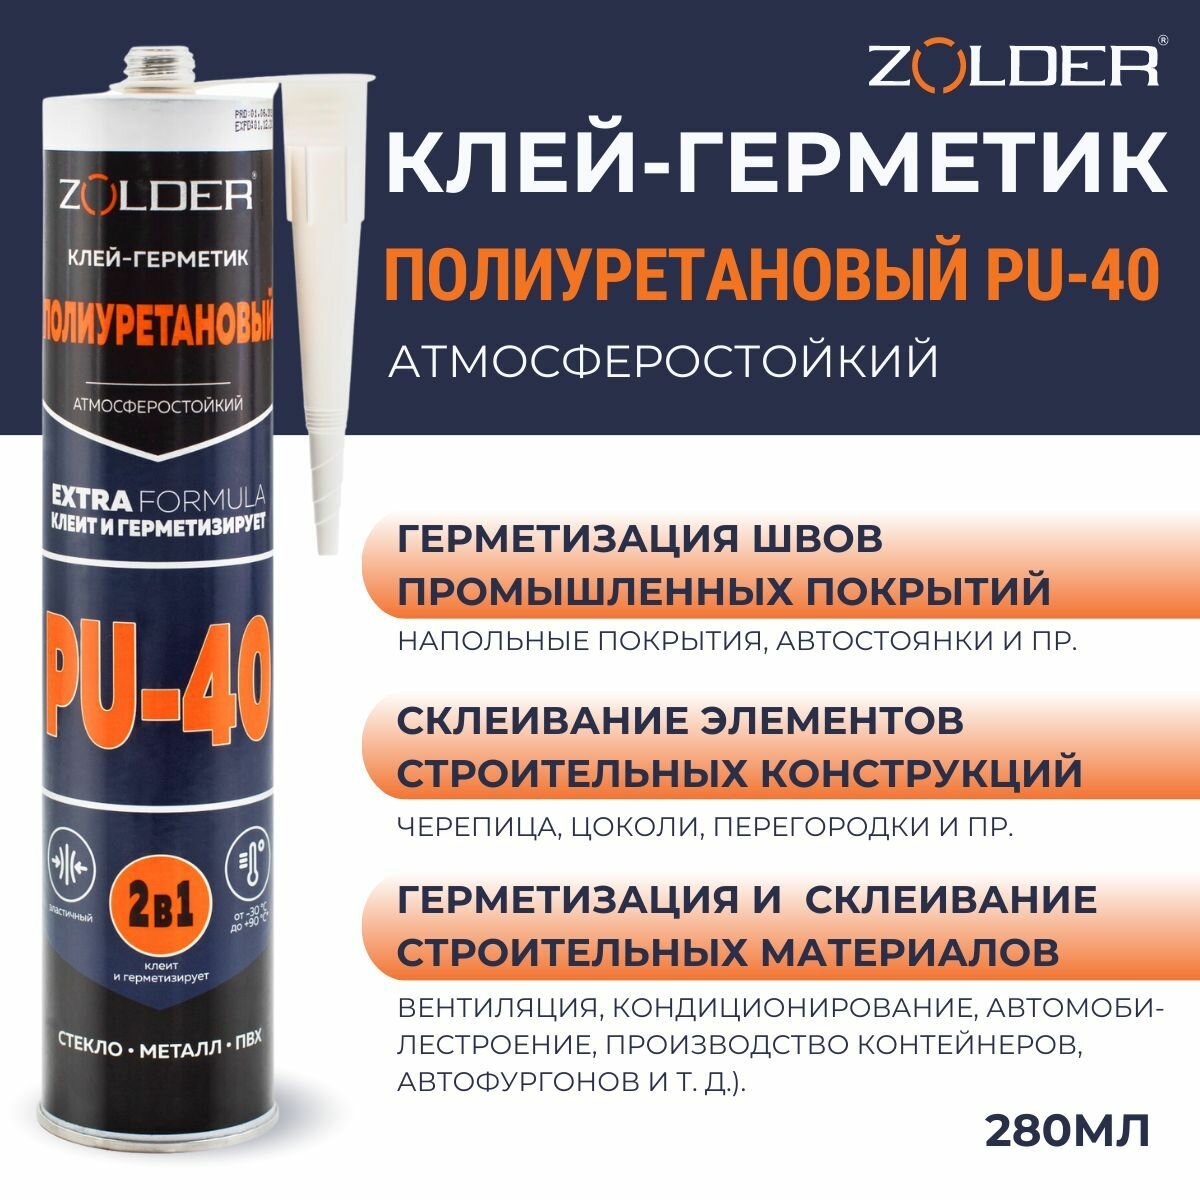 Клей-герметик полиуретановый ZOLDER PU-40 быстросохнущий, атмосферостойкий, черный, 280мл